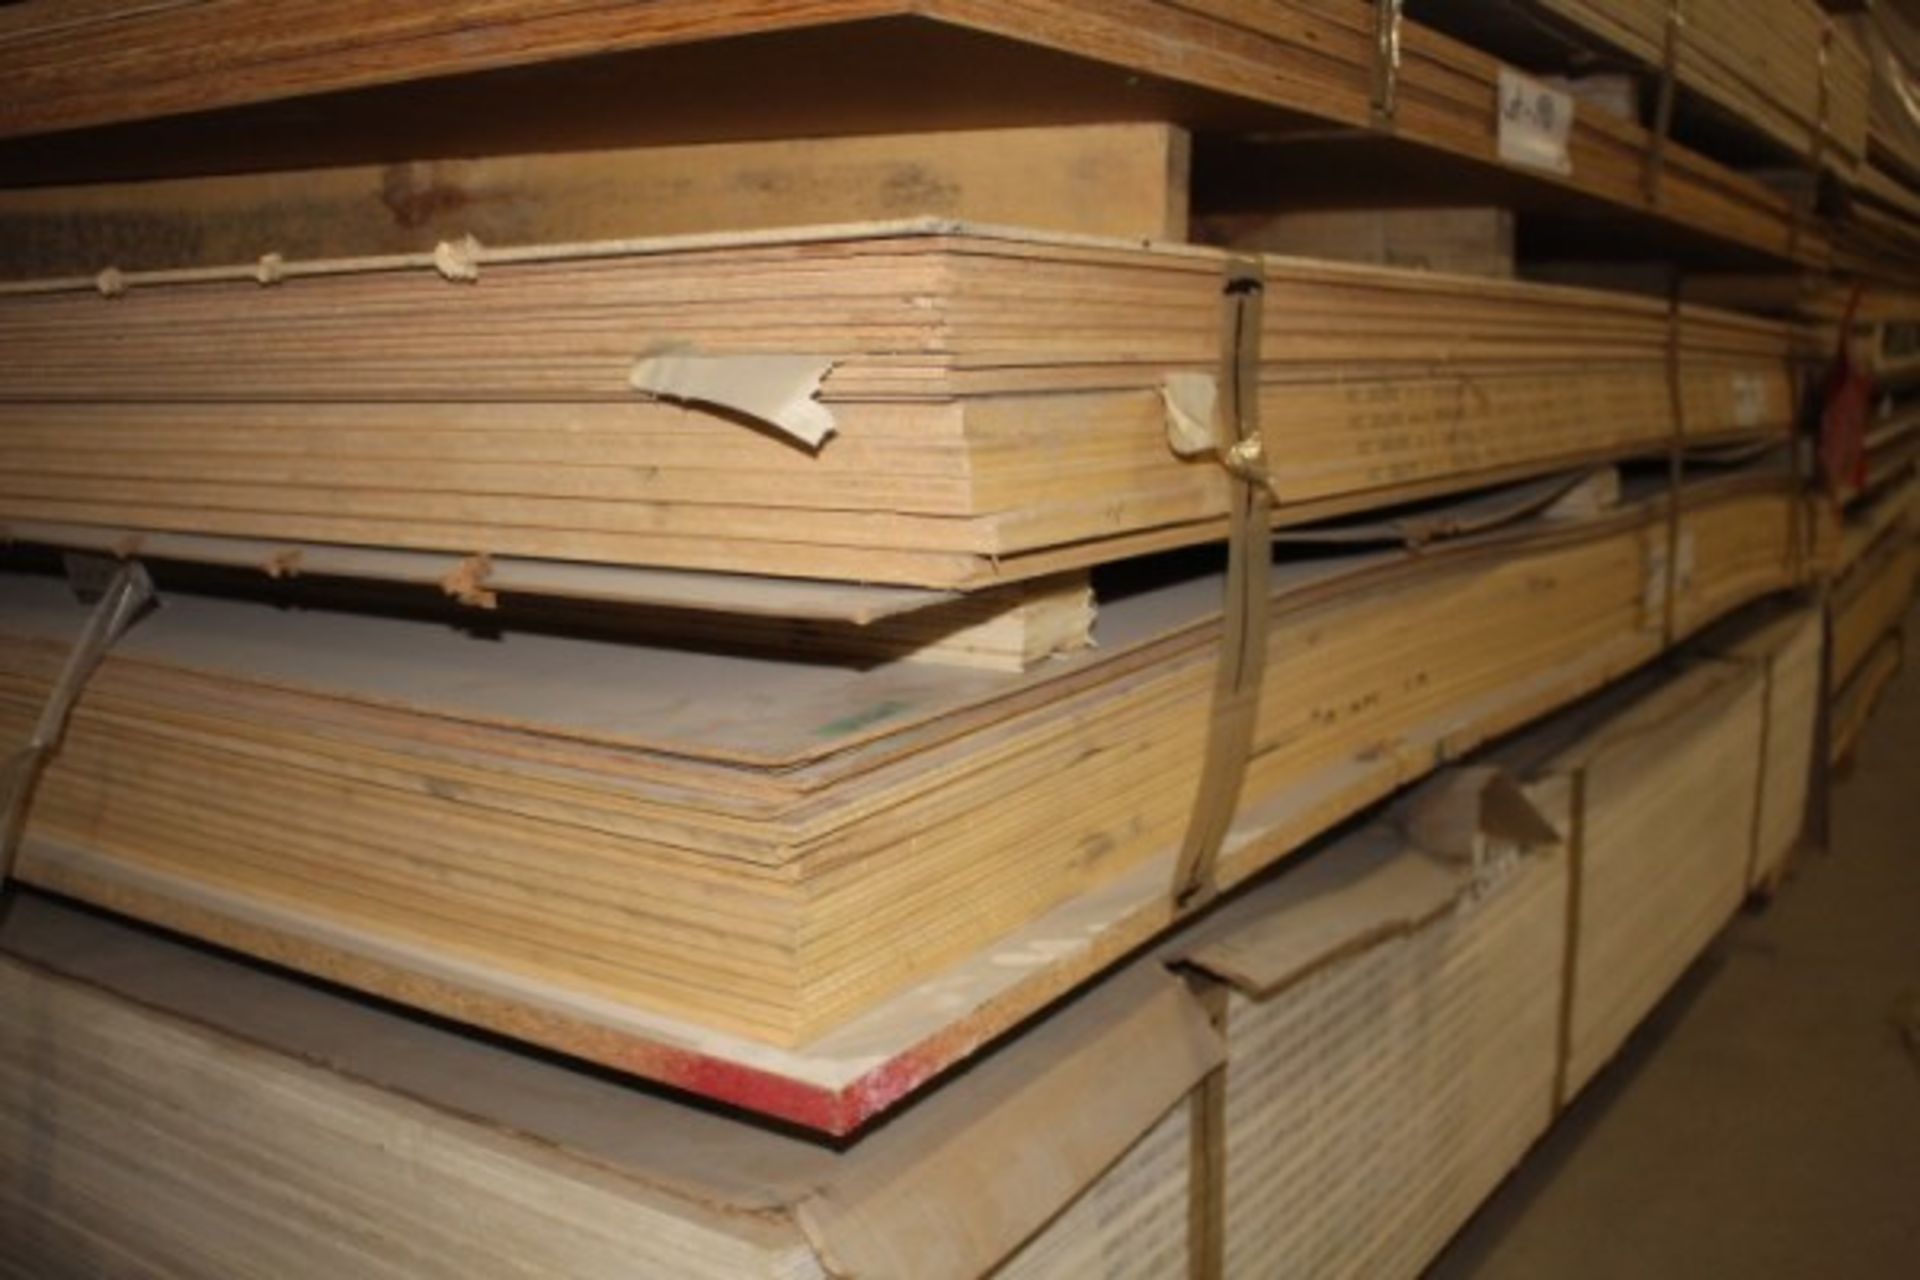 Lot of 4 x 8 x 3/4" oak plywood 11 sheets 3/8" okume - Image 2 of 2